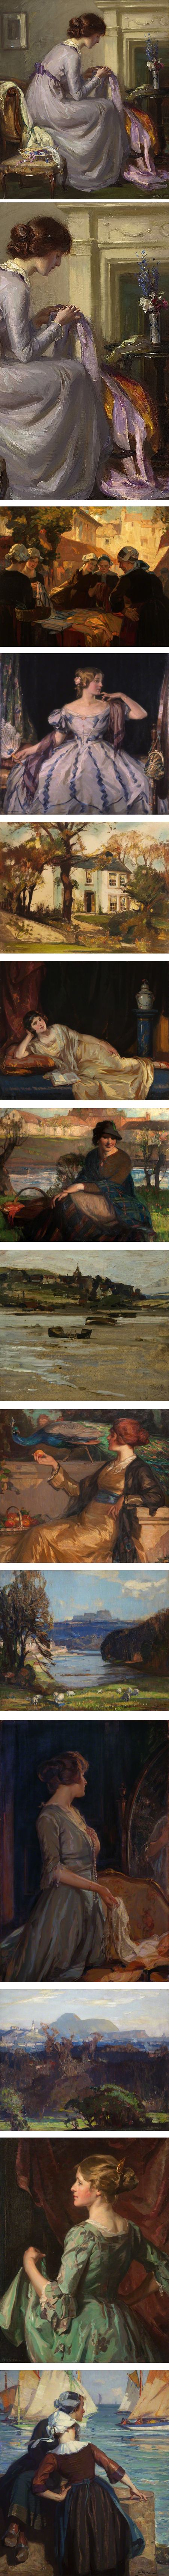 Robert Hope. 19th century Scottish painter